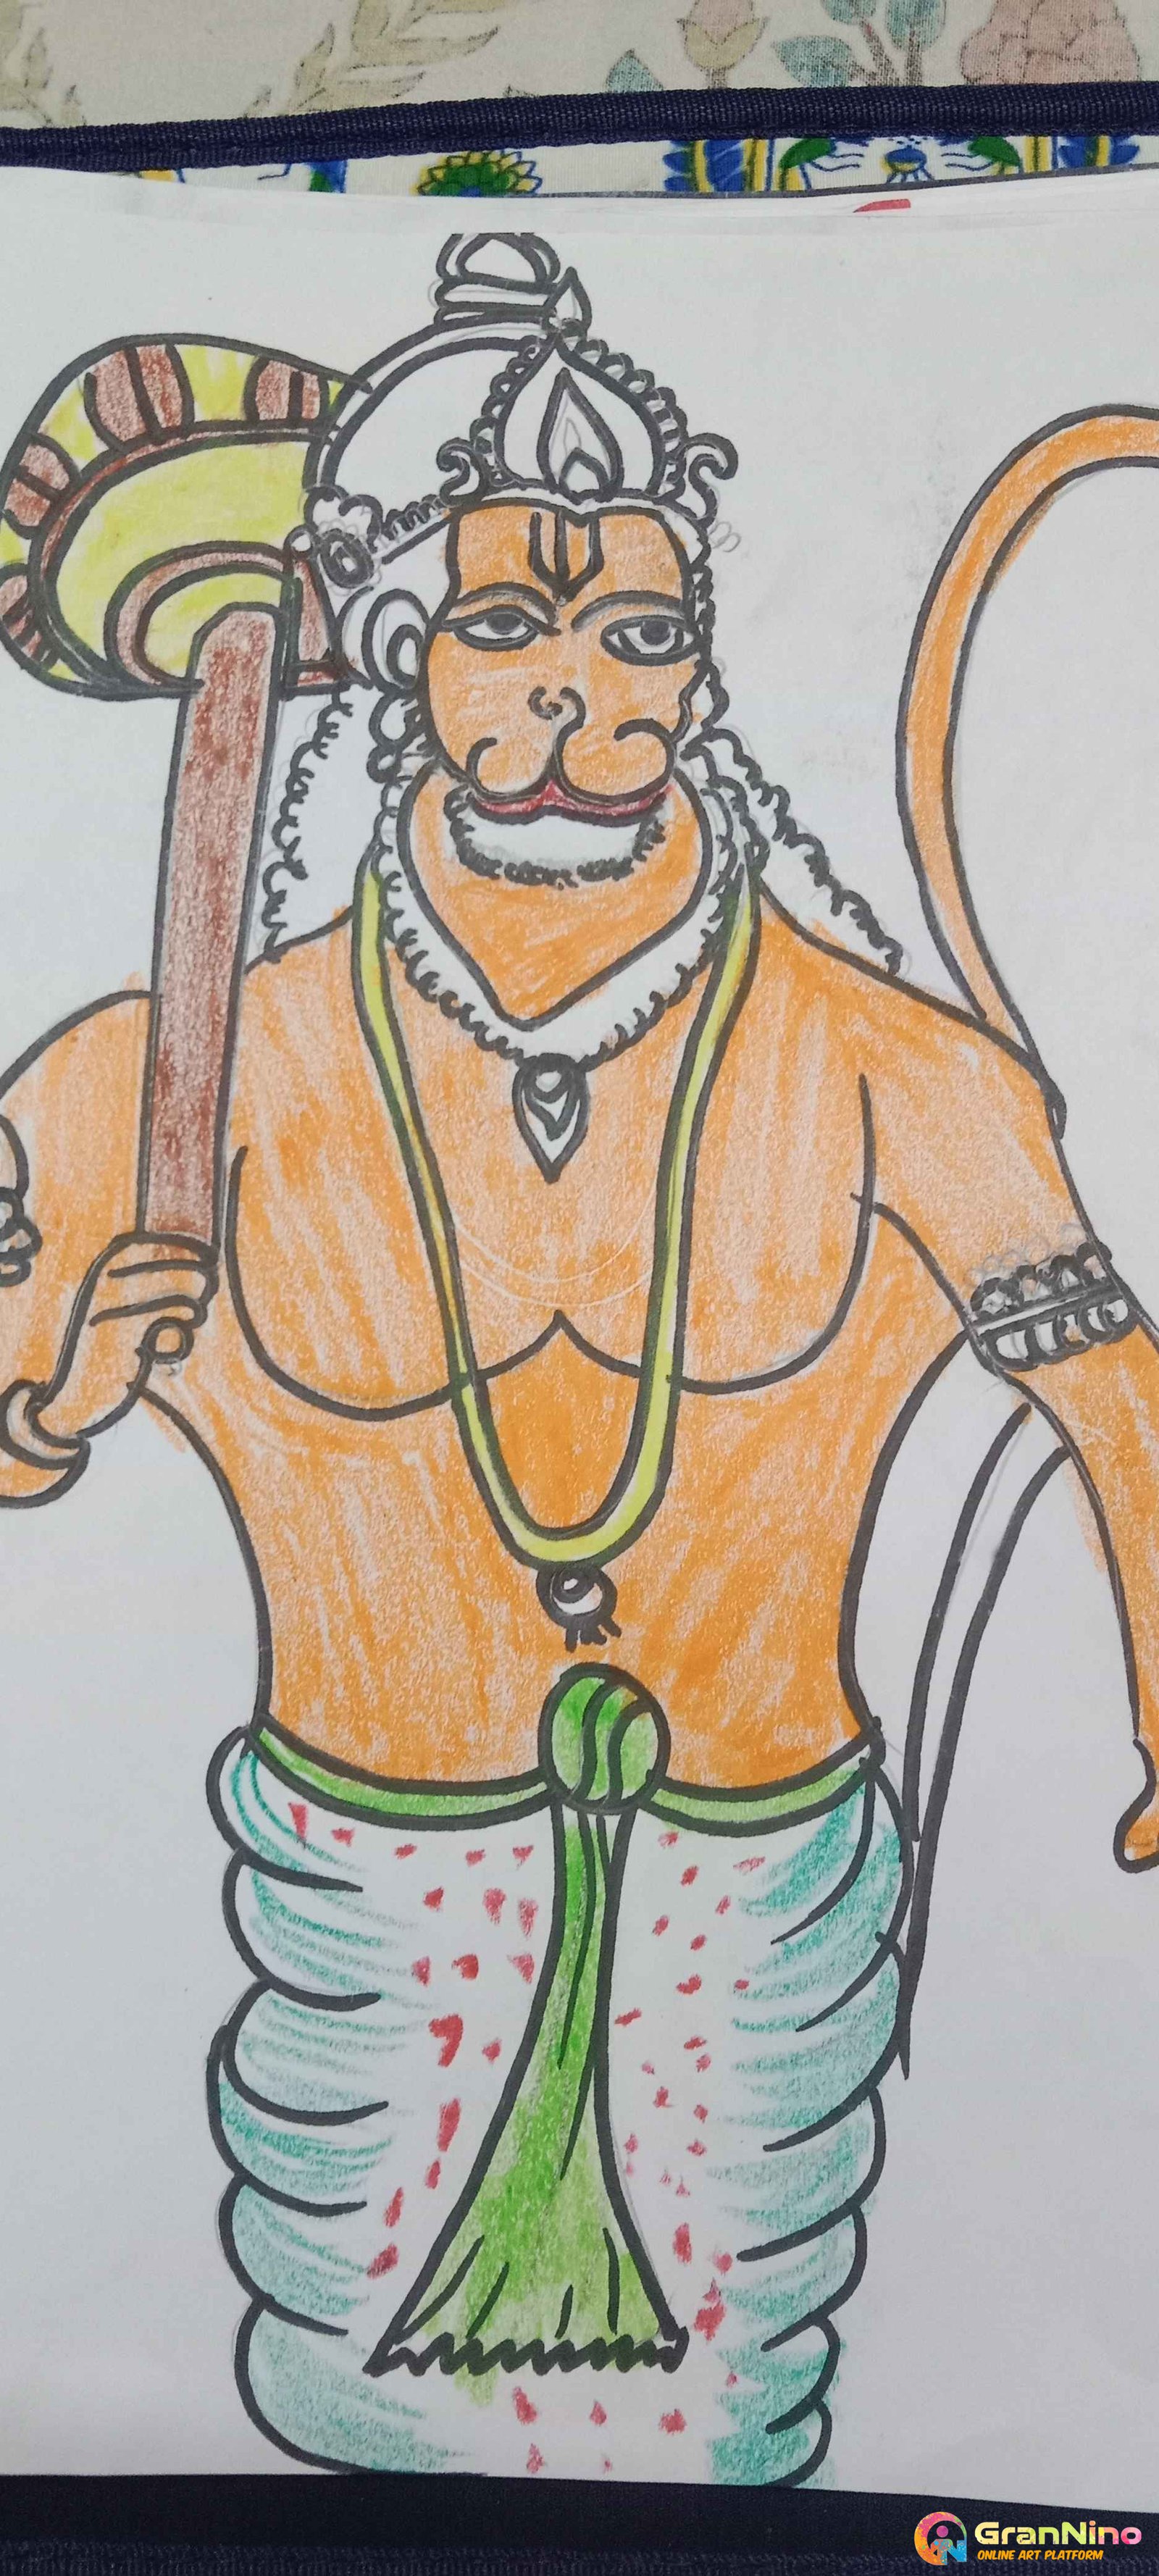 Hanuman Ji Drawing -Jai Shri Ram by Z Simple Arts : r/HinduArt